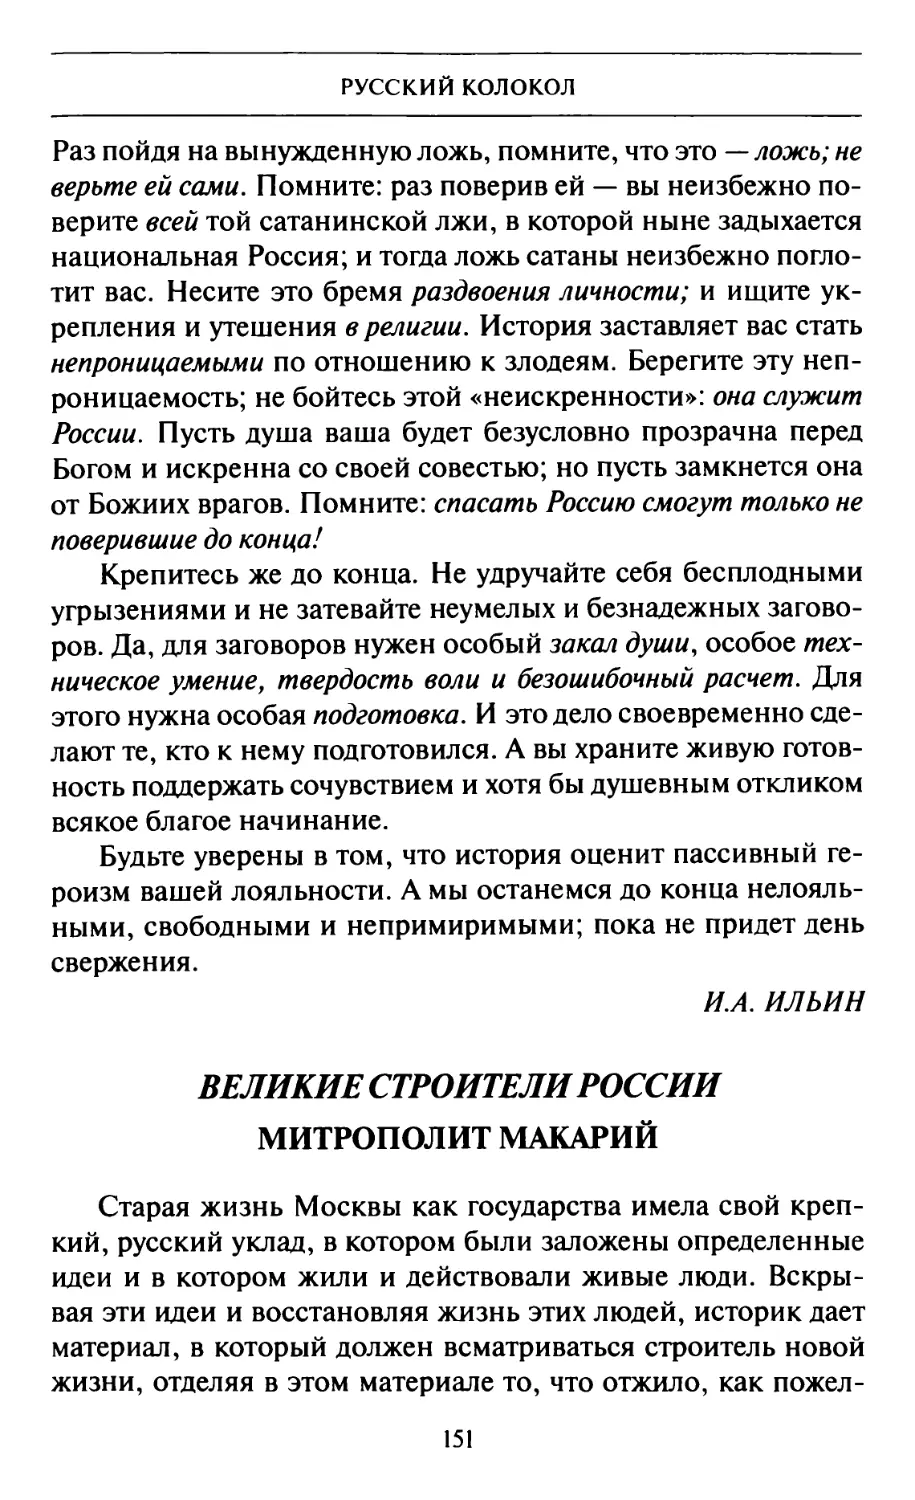 И.И. Лаппо. Великие строители России. Митрополит Макарий